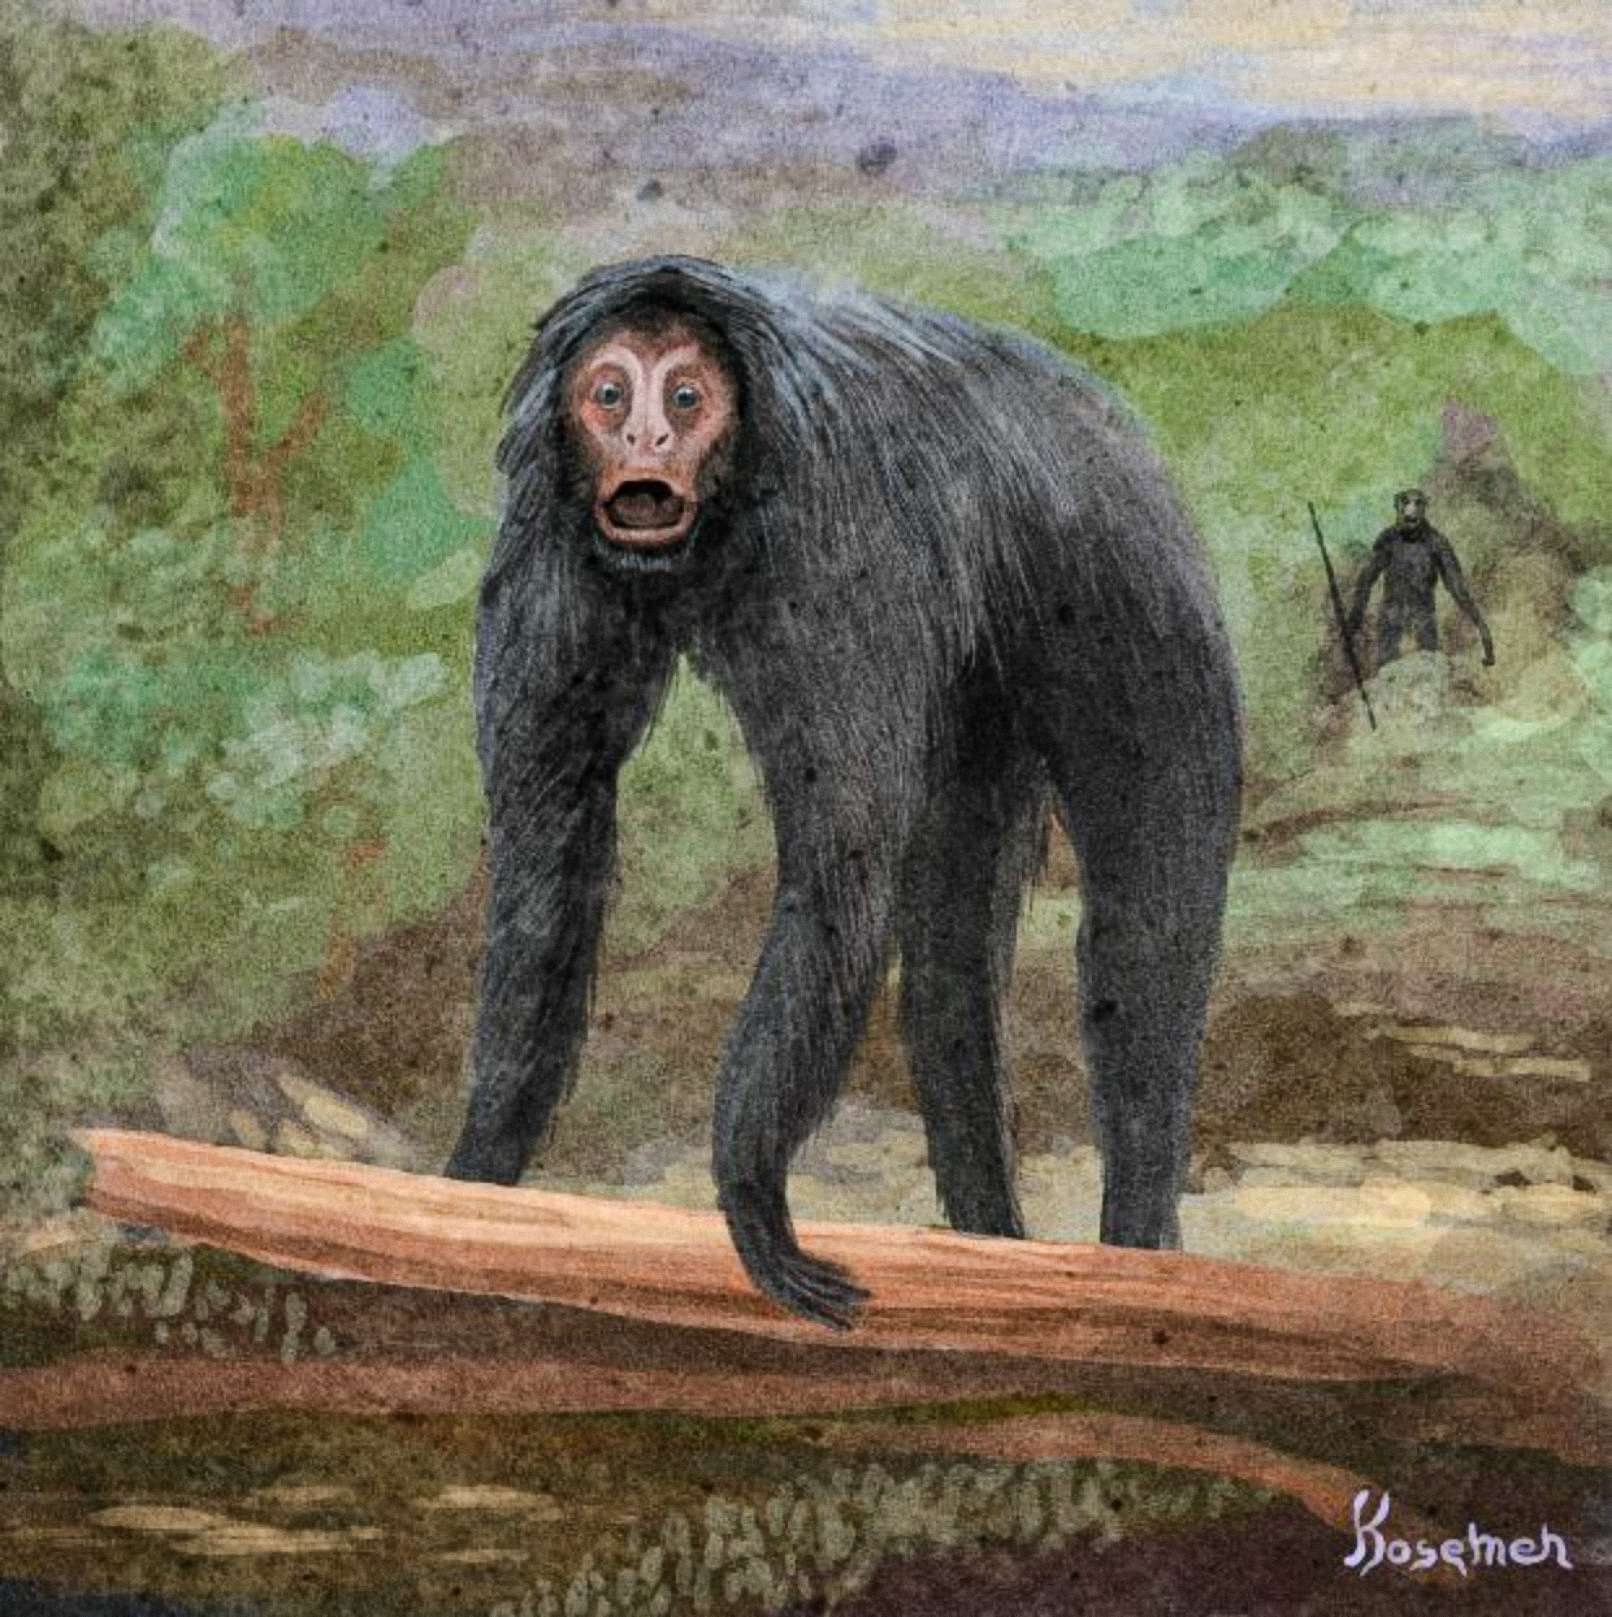 Spekulativna interpretacija događaja, drugi primat prikazan straga s alatom (umjetništvo Kosemena)